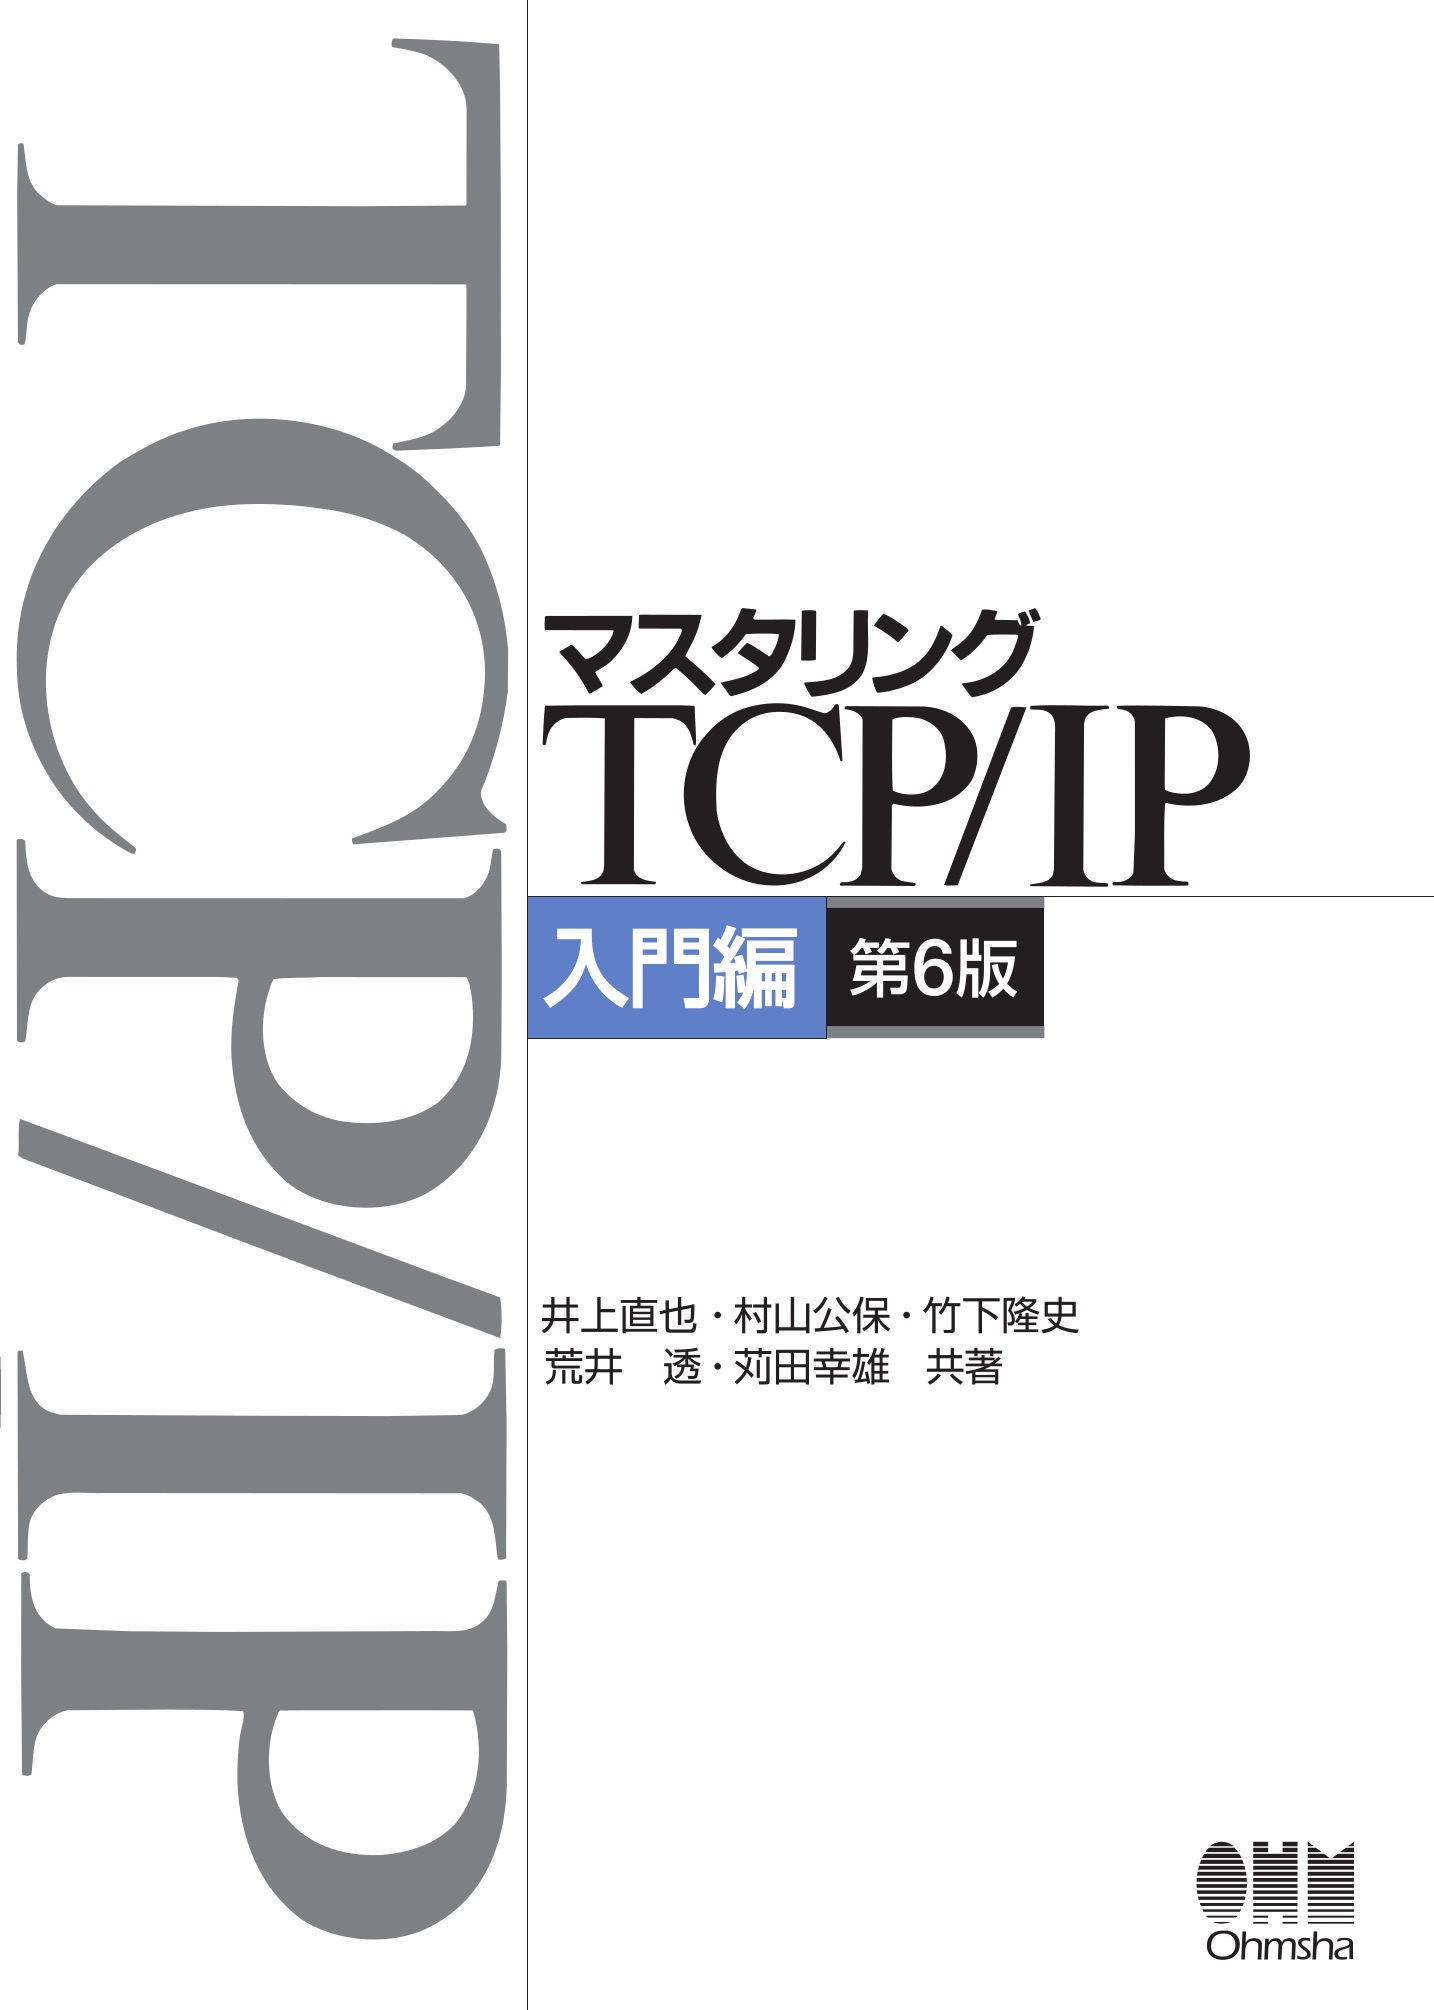 マスタリングTCP/IP 入門編 第6版【委託】 - 達人出版会